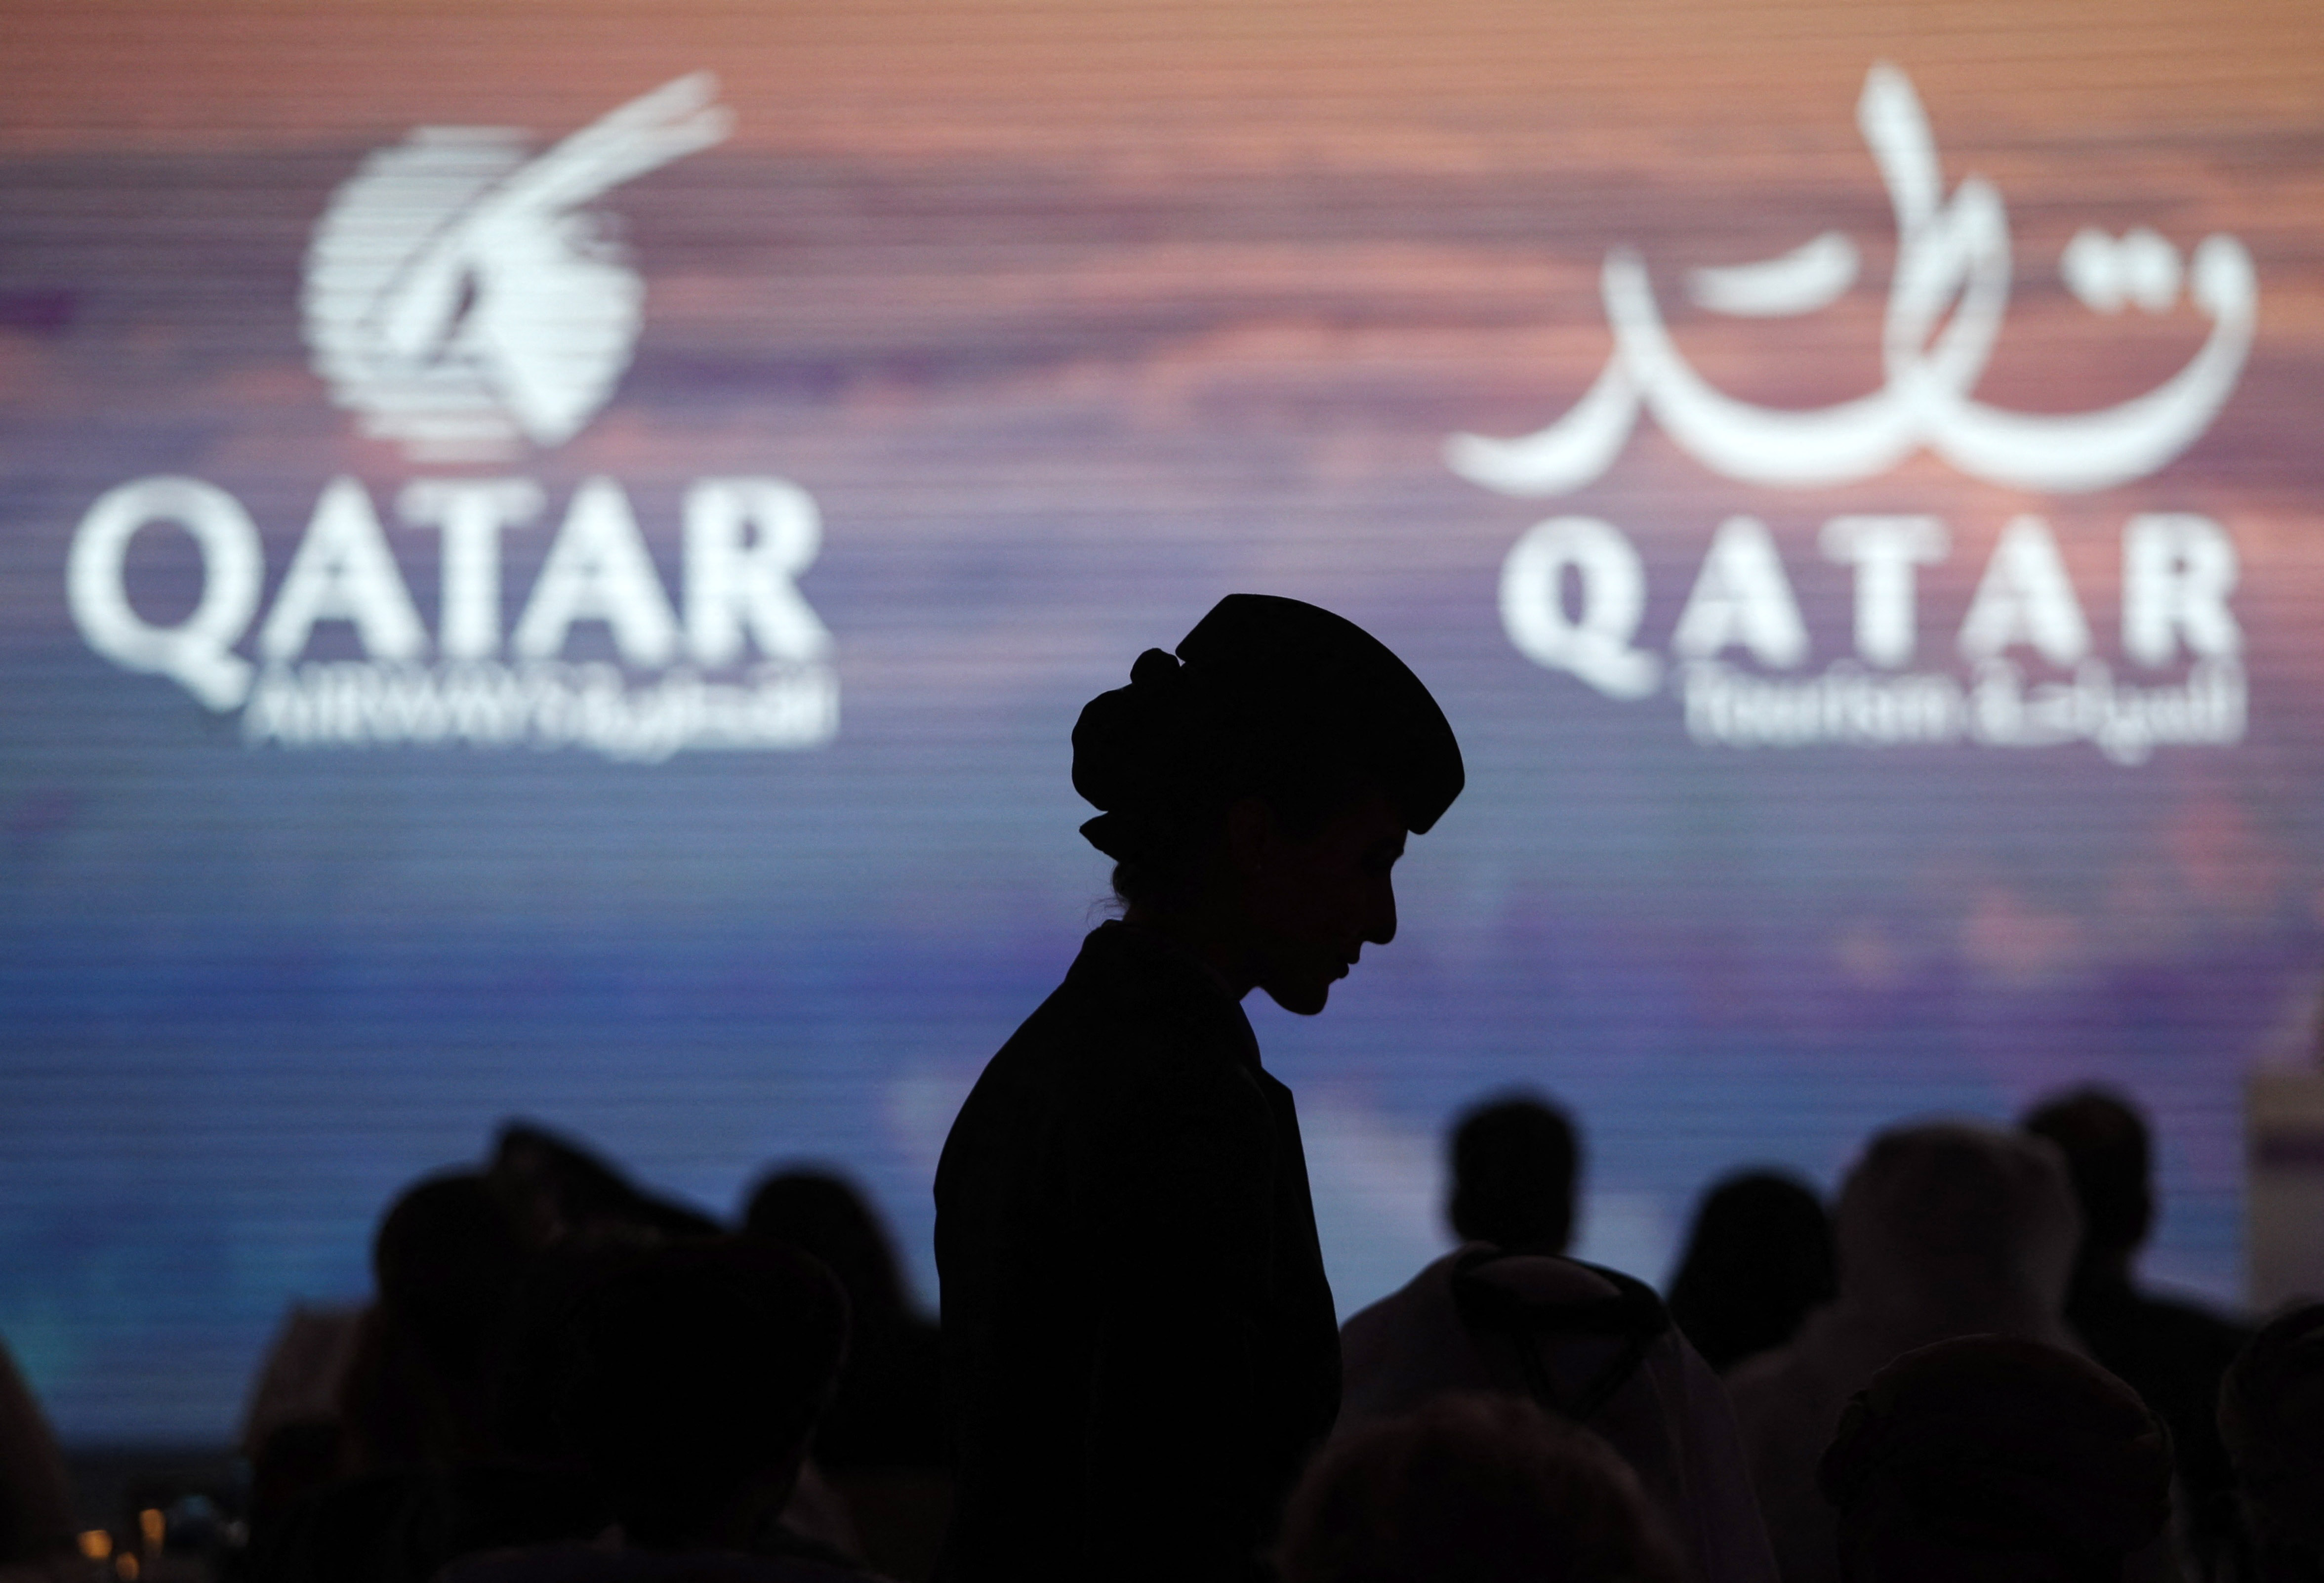 Qatar Airways Press Conference